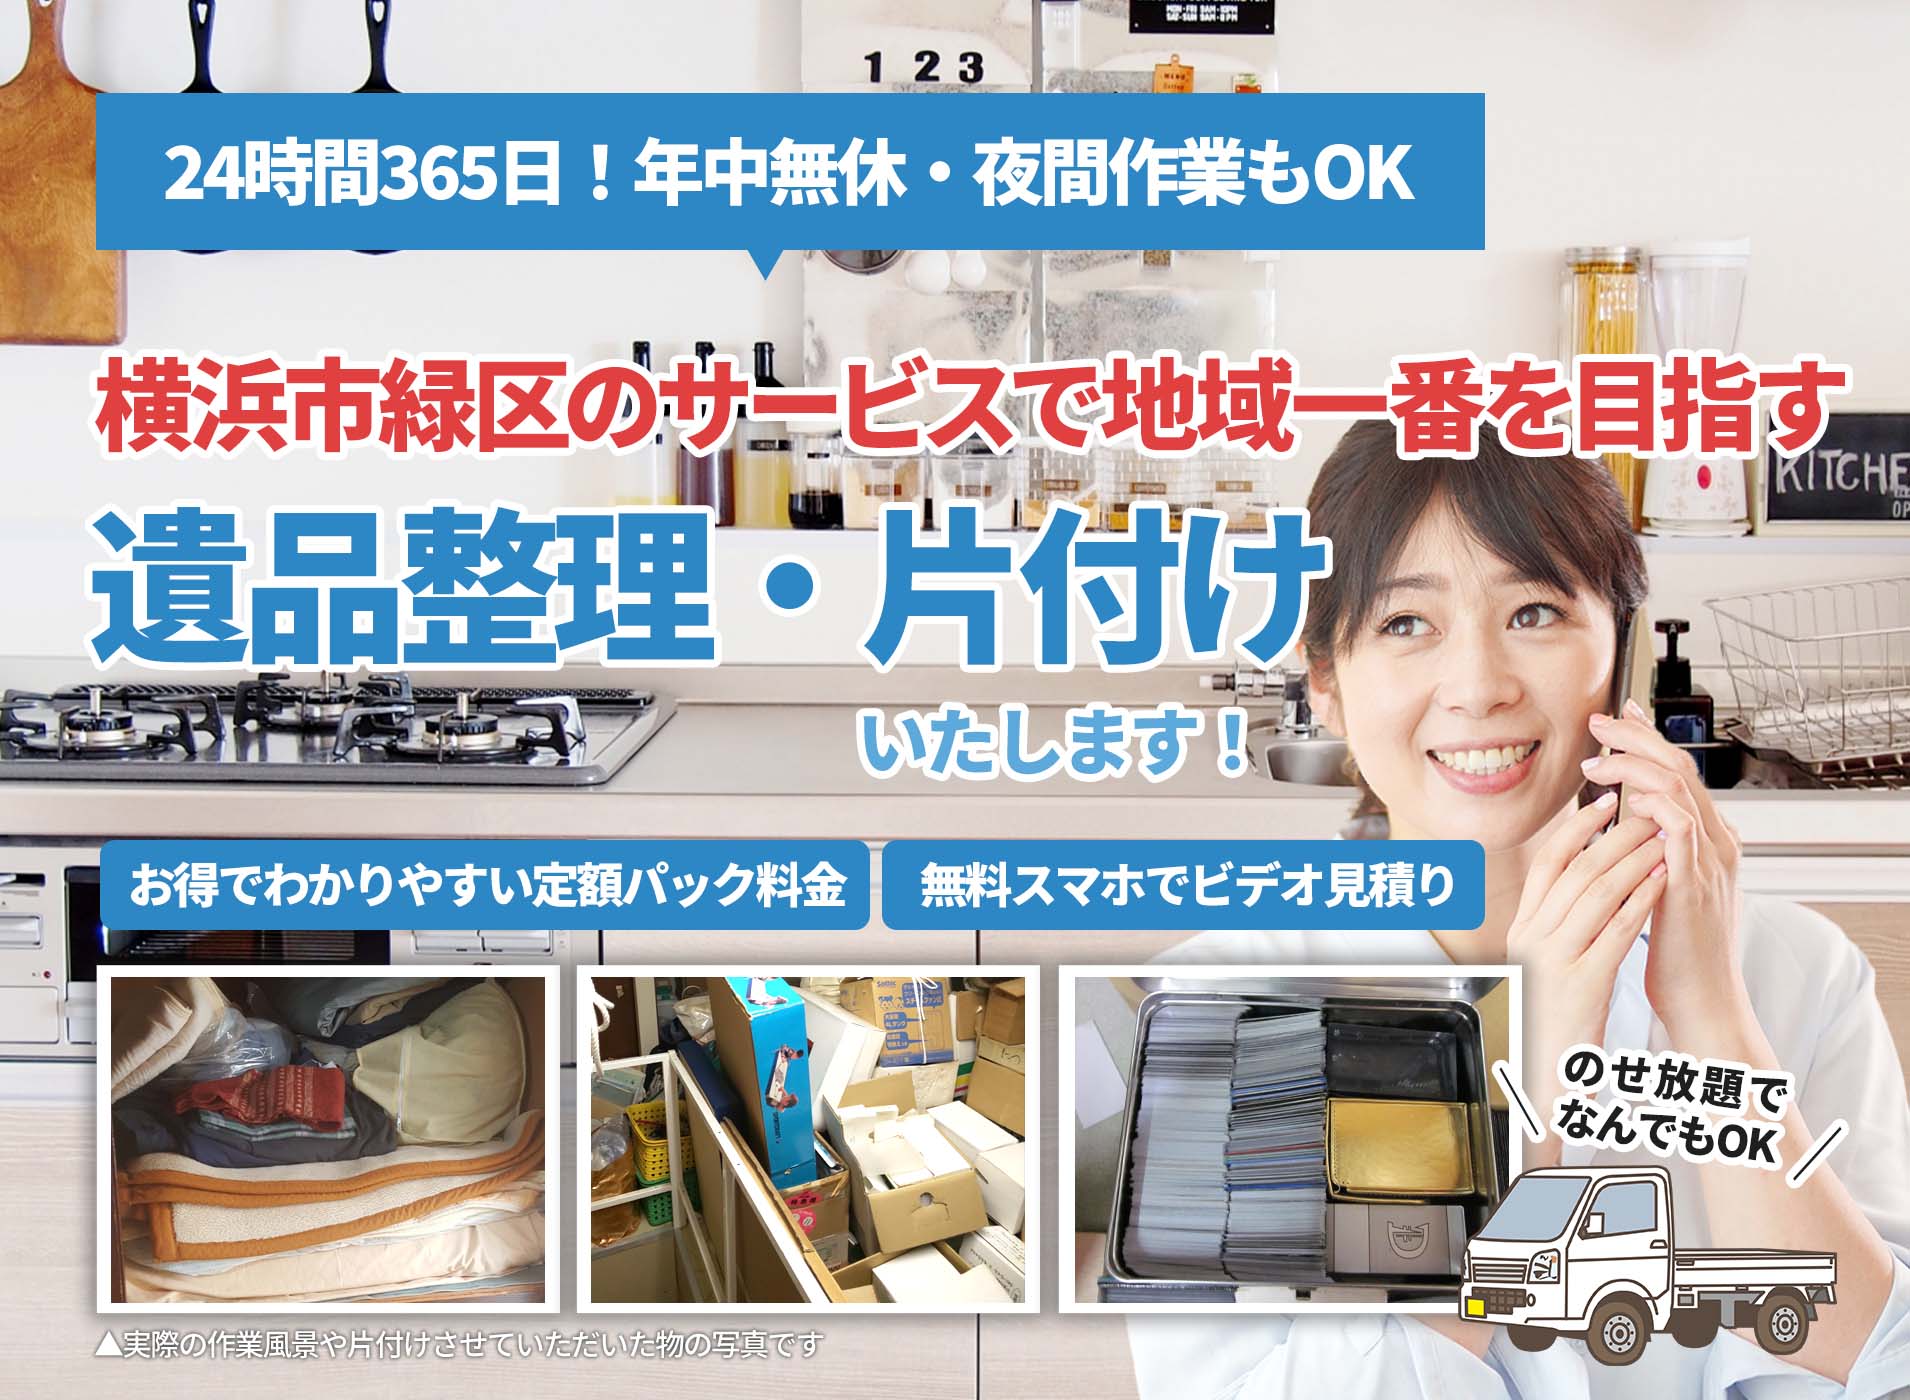 横浜市緑区のサービスで地域一番を目指すＬＴＪ遺品整理隊の遺品整理サービス